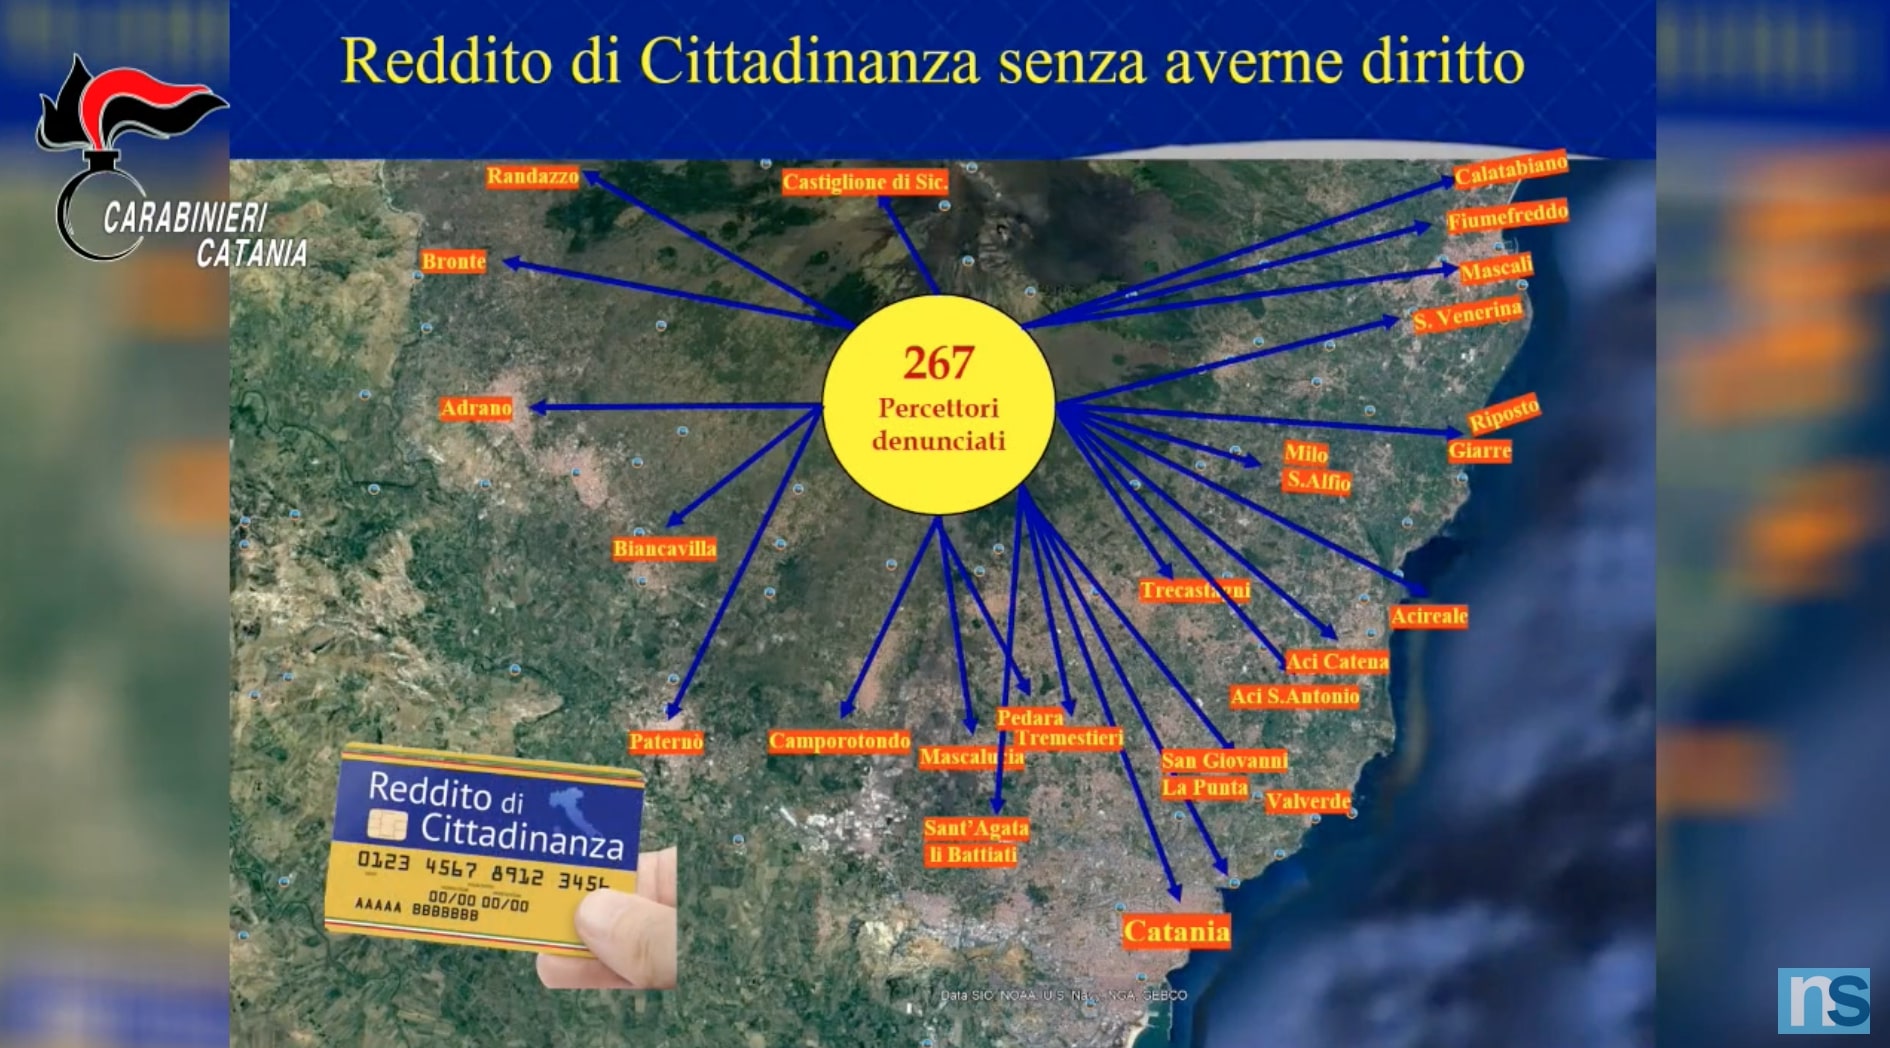 Reddito di Cittadinanza senza averne il diritto, quasi 300 denunce a Catania – VIDEO